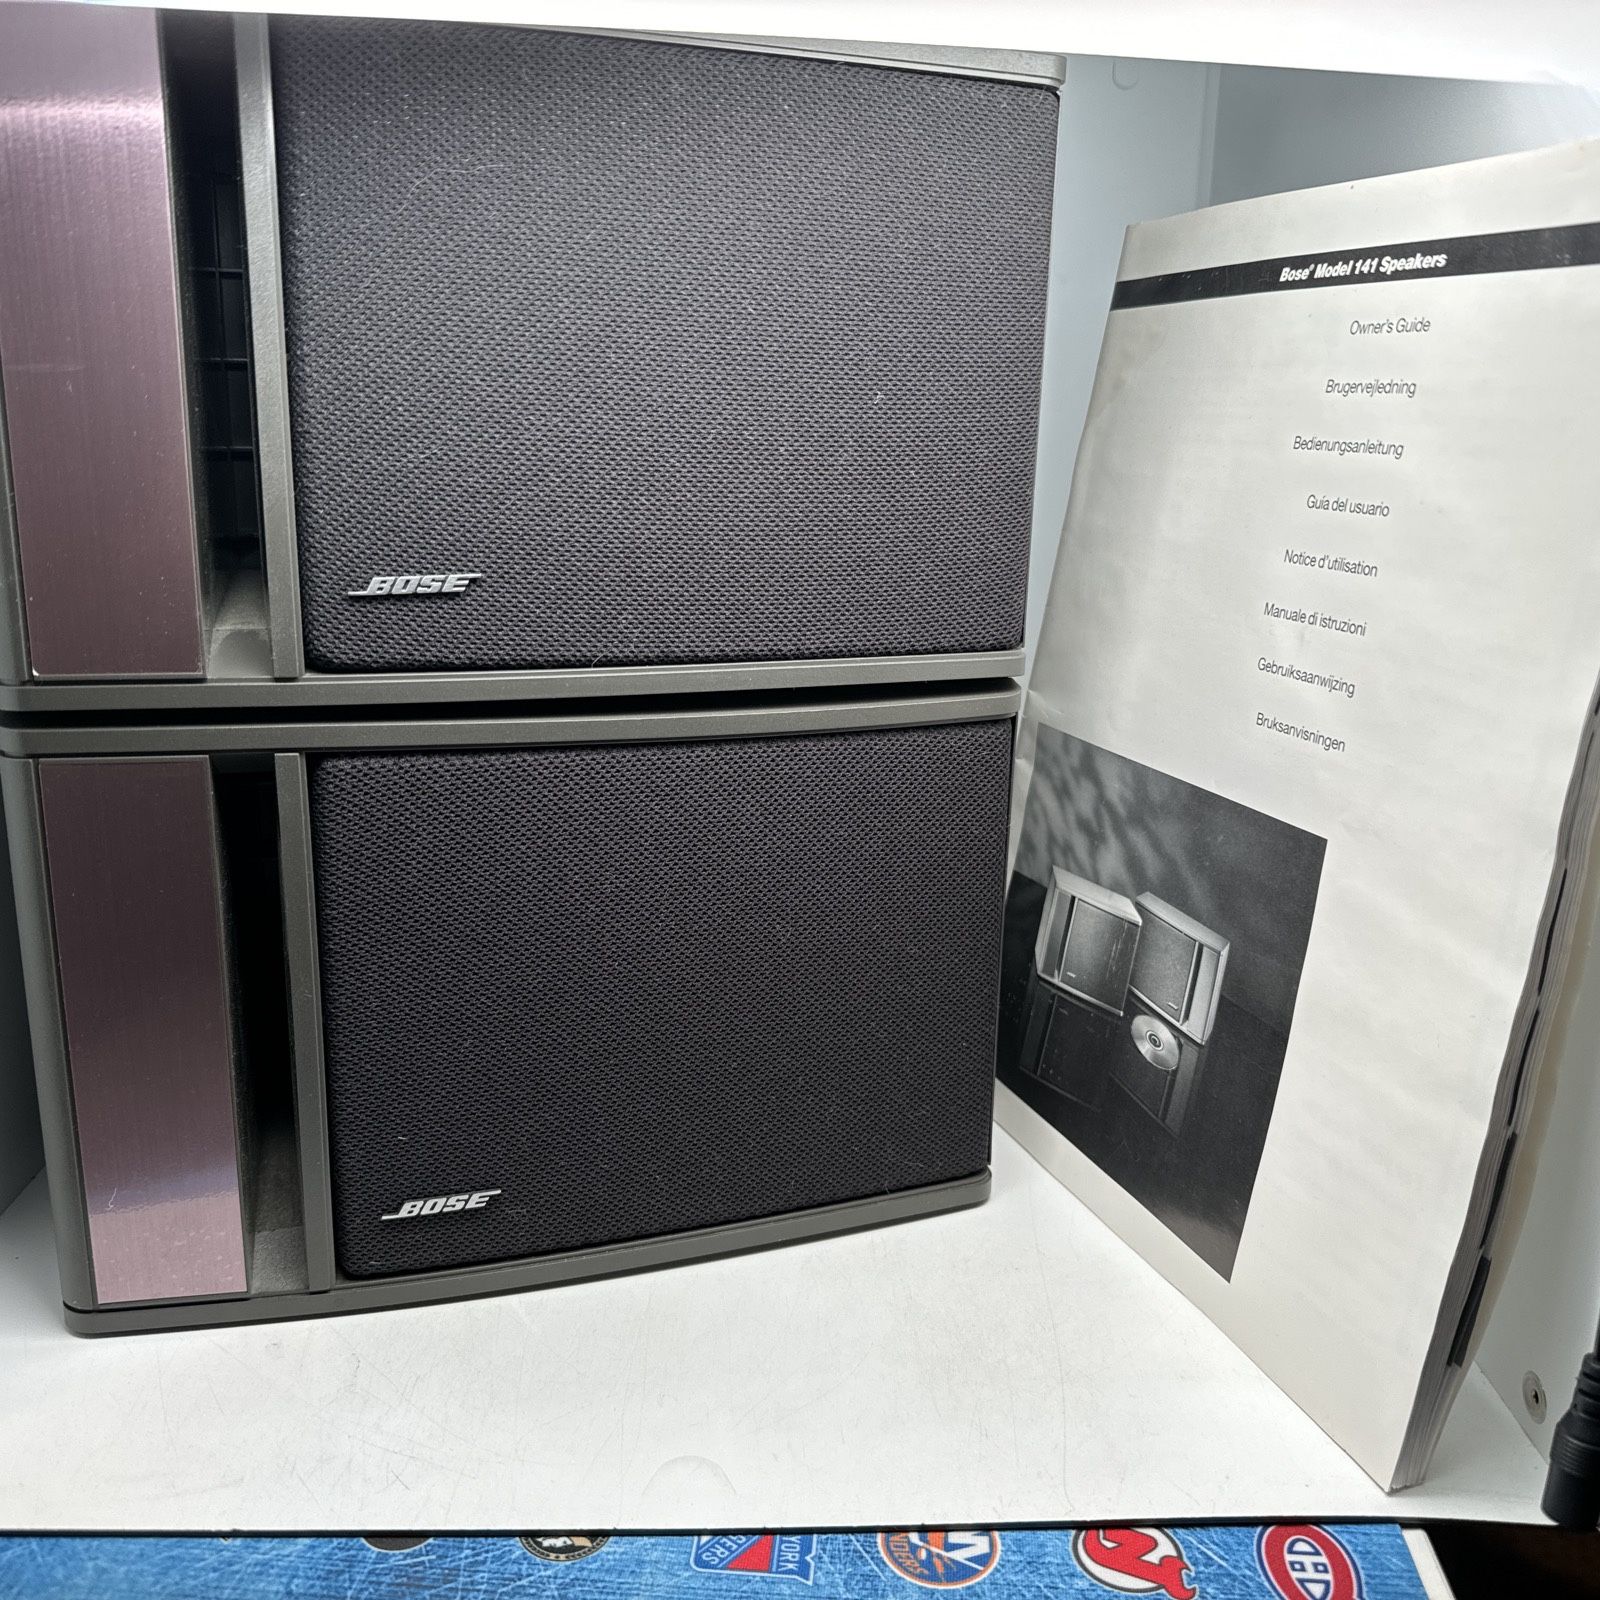 BOSE Model 141 40W Full Range Bookshelf Home Stereo Speakers (4)Tested Crisp Sound